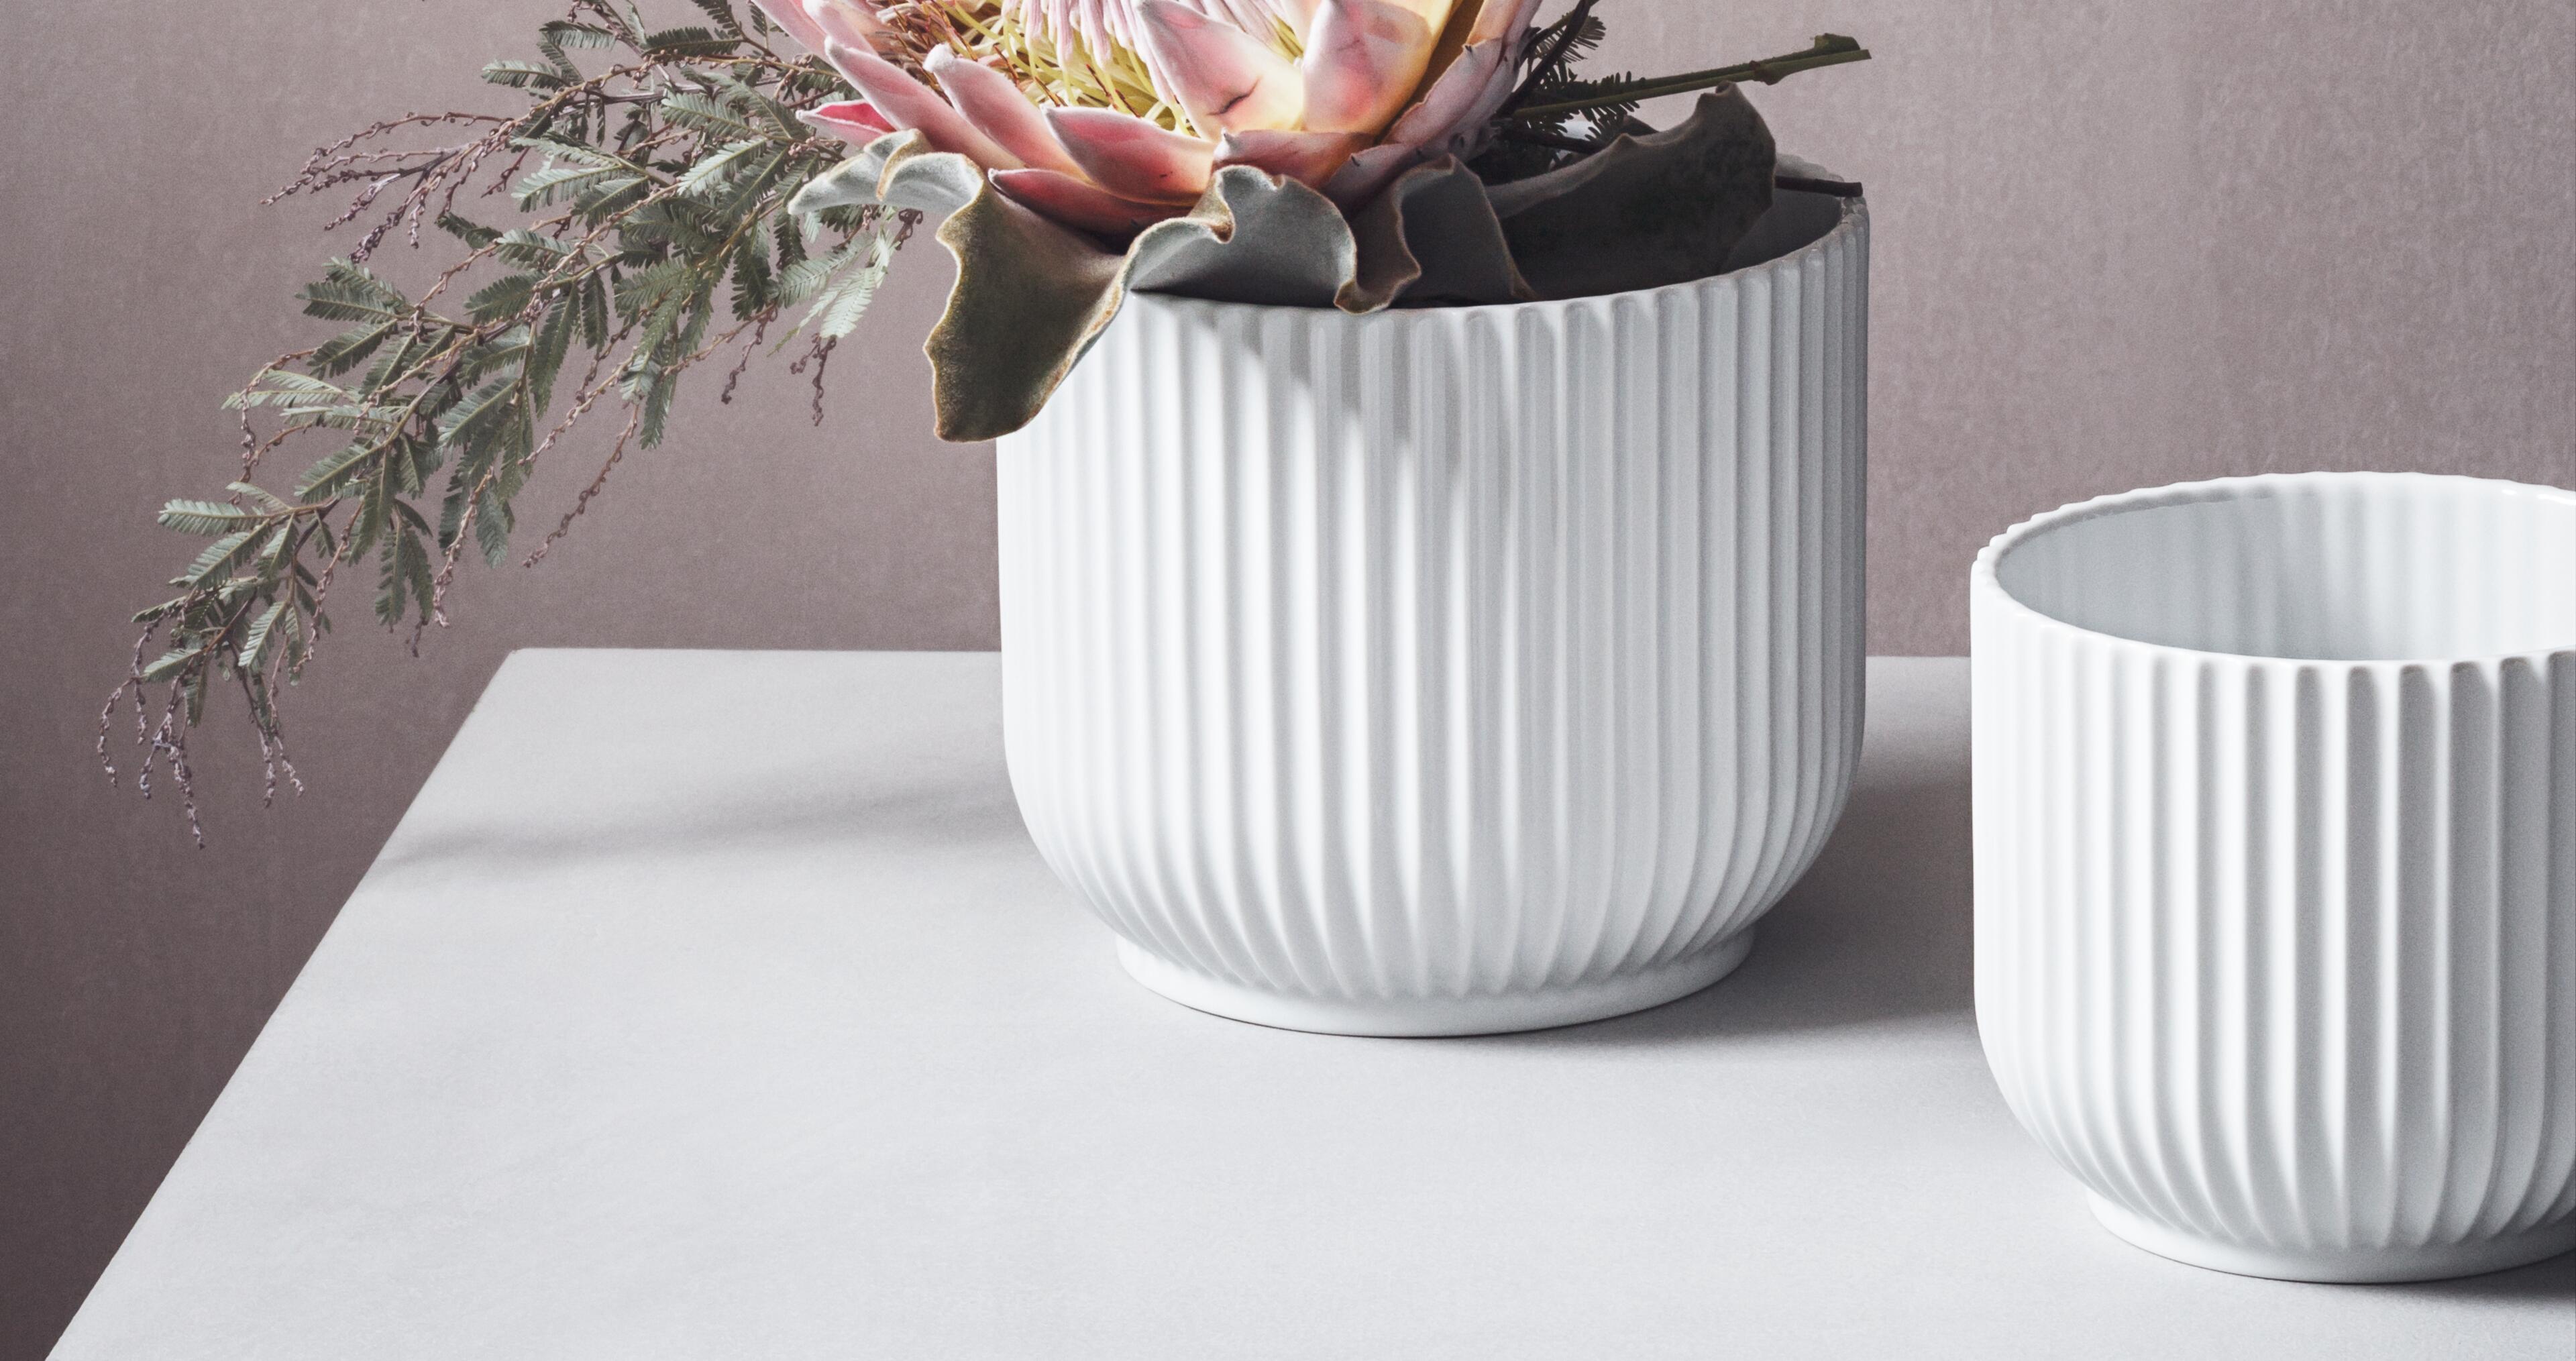 Lyngby Porcelain vases.